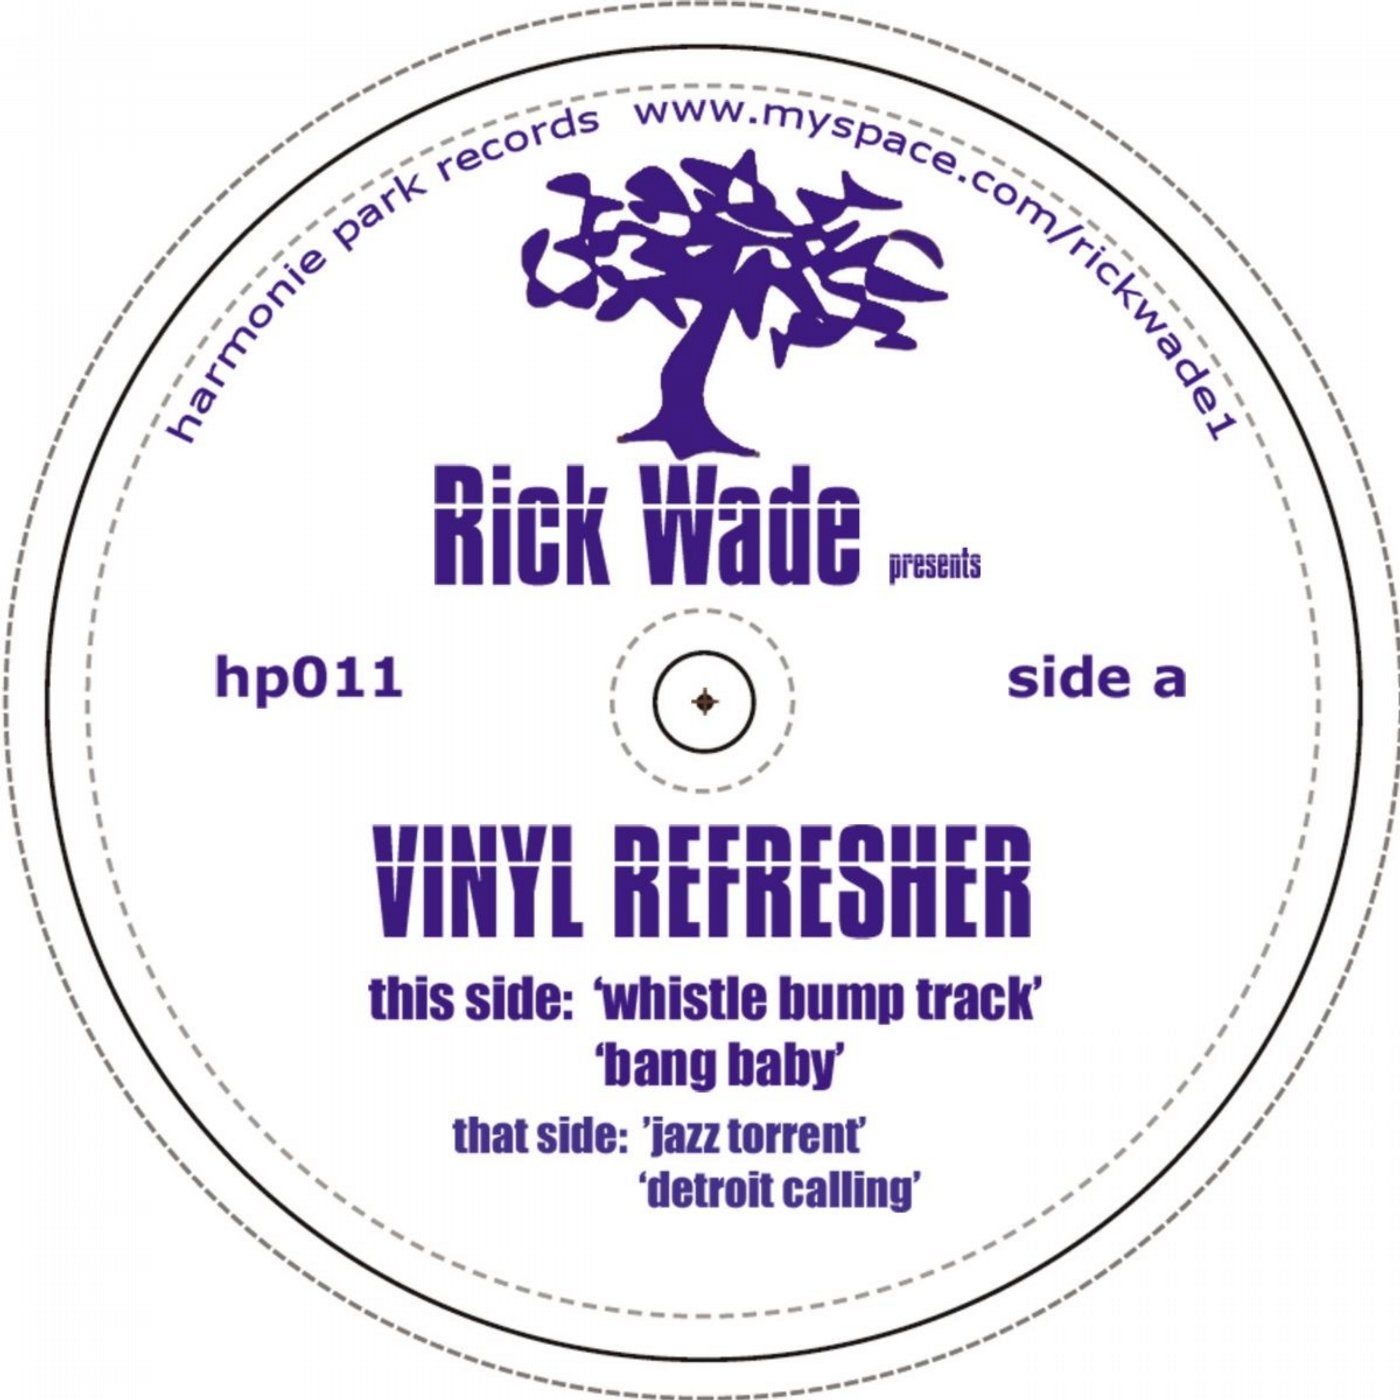 Vinyl Refresher